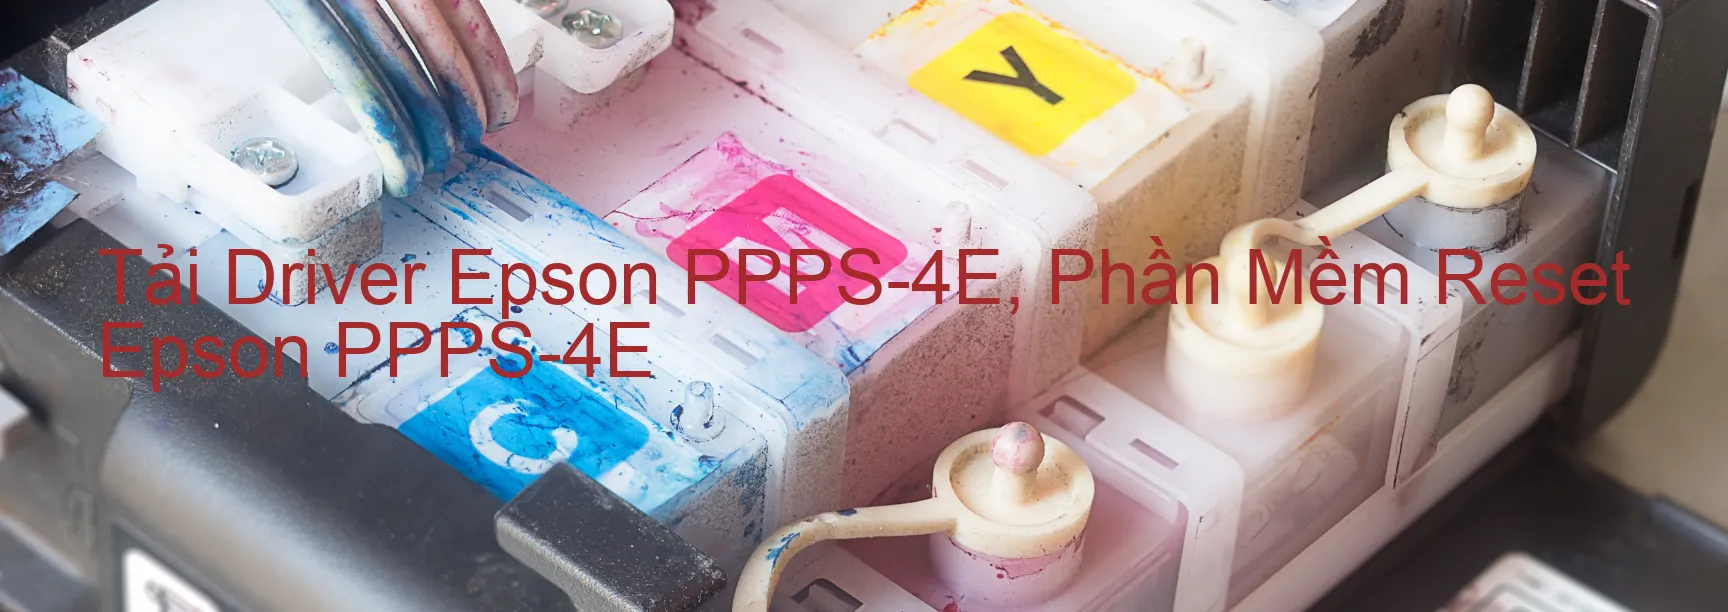 Driver Epson PPPS-4E, Phần Mềm Reset Epson PPPS-4E